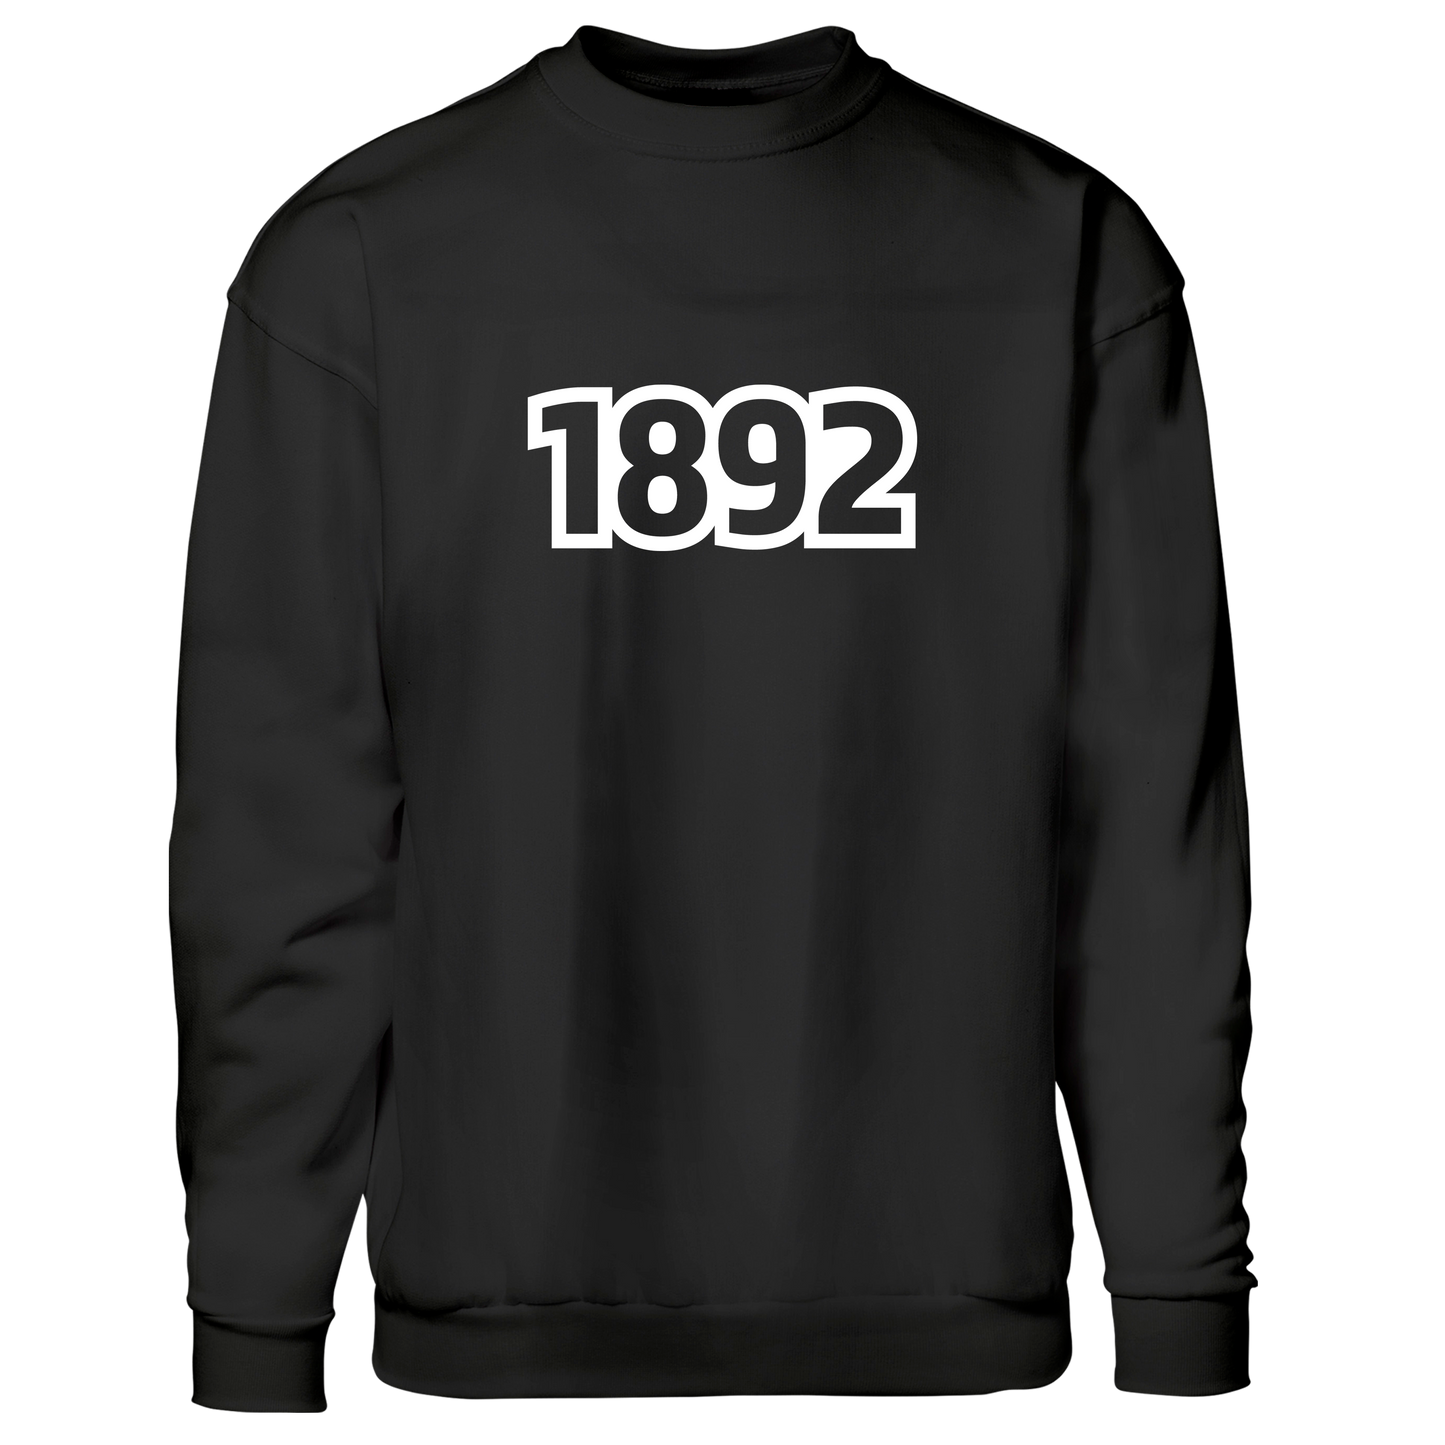 1892 - sweatshirt